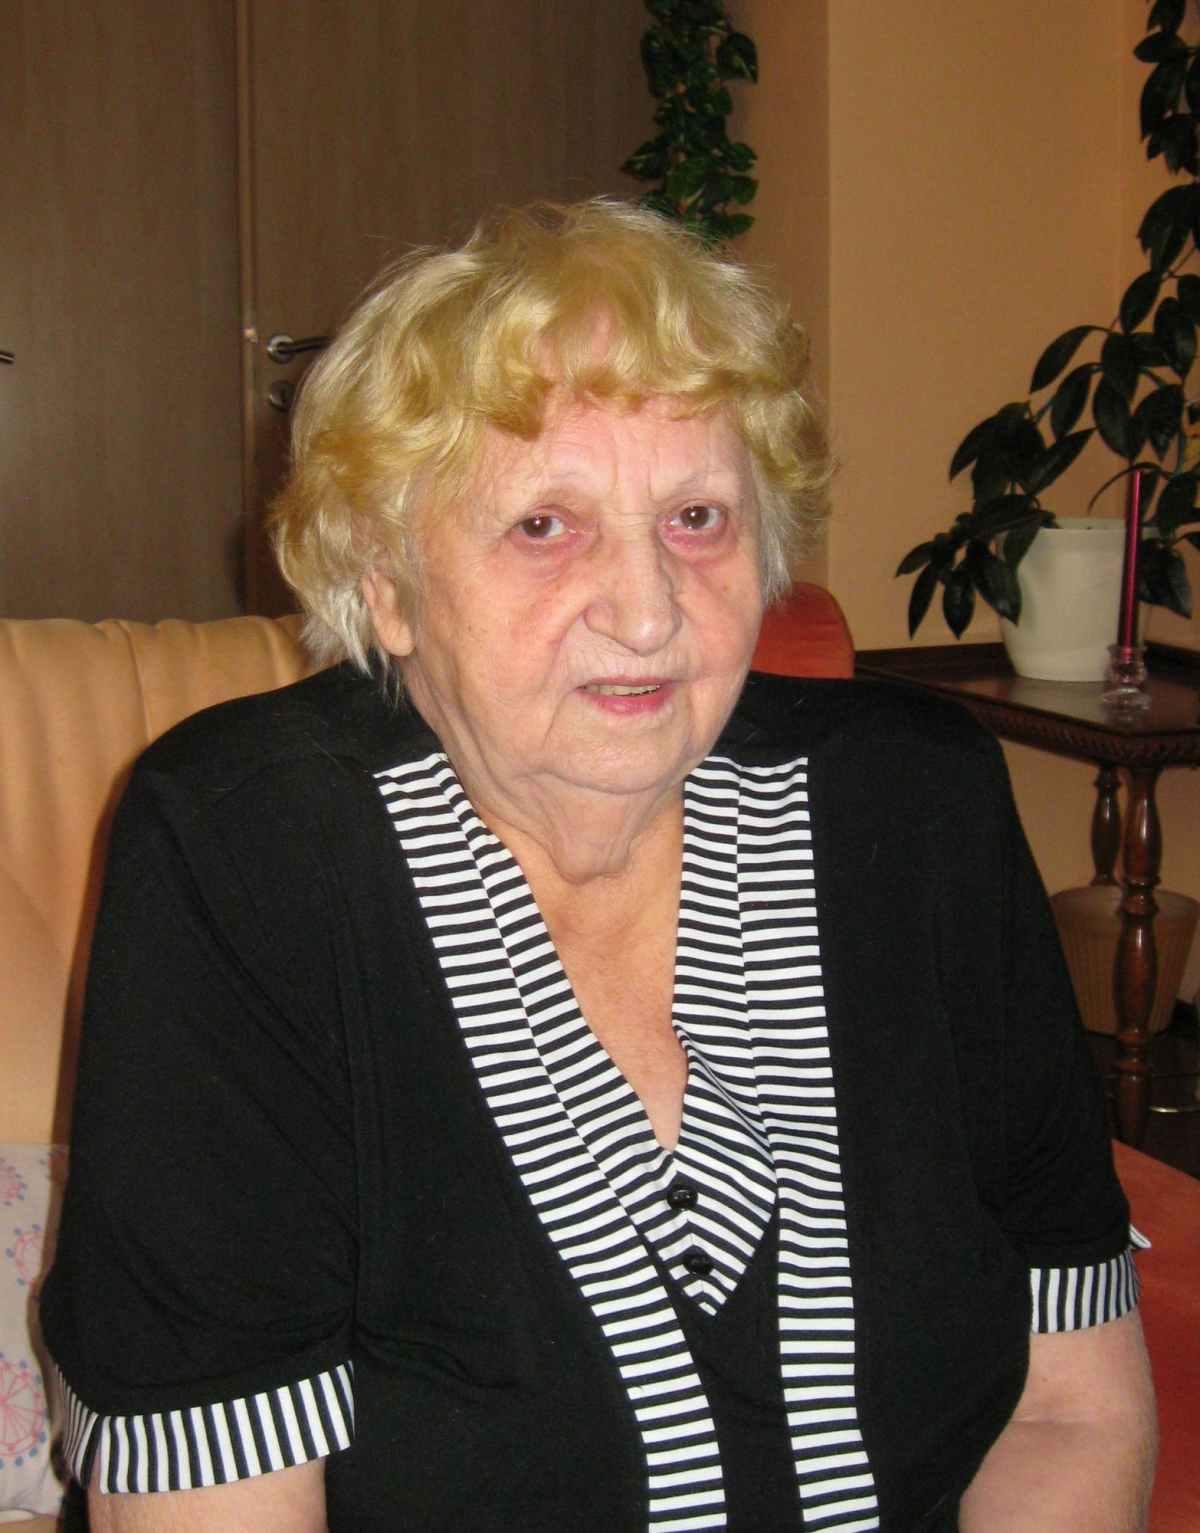 Blažena Baborová sa v polovici 60. rokov presťahovala z Františkových Lázní do Chebu, kde sa starala o svoju matku.